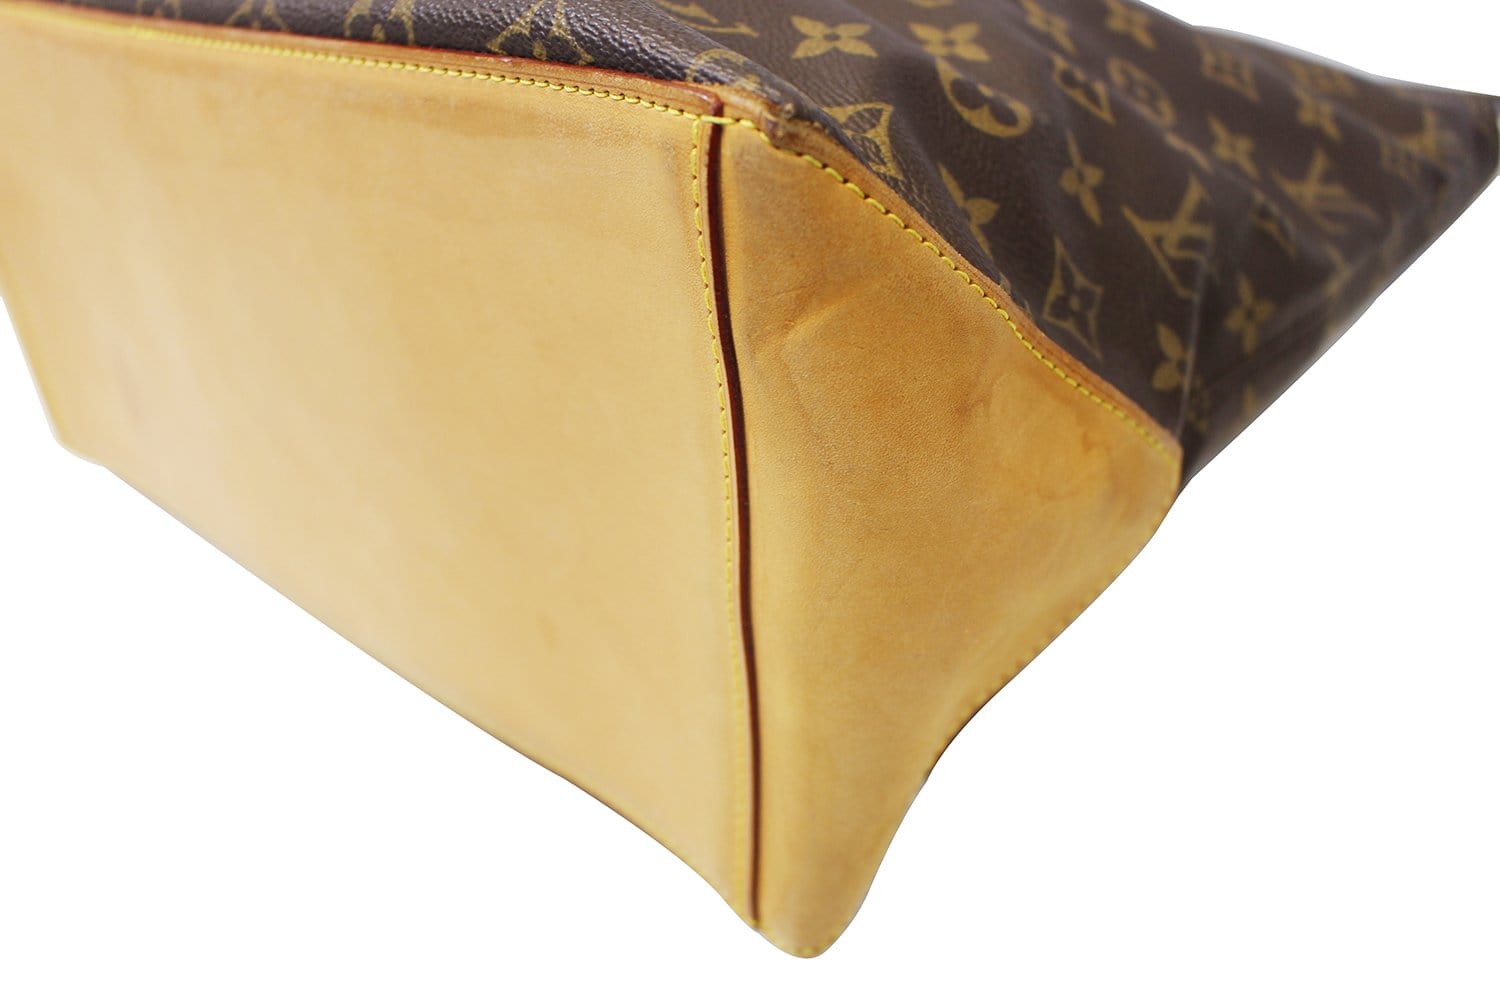 Authentic Louis Vuitton Monogram Cabas Mezzo Tote/Shoulder Bag